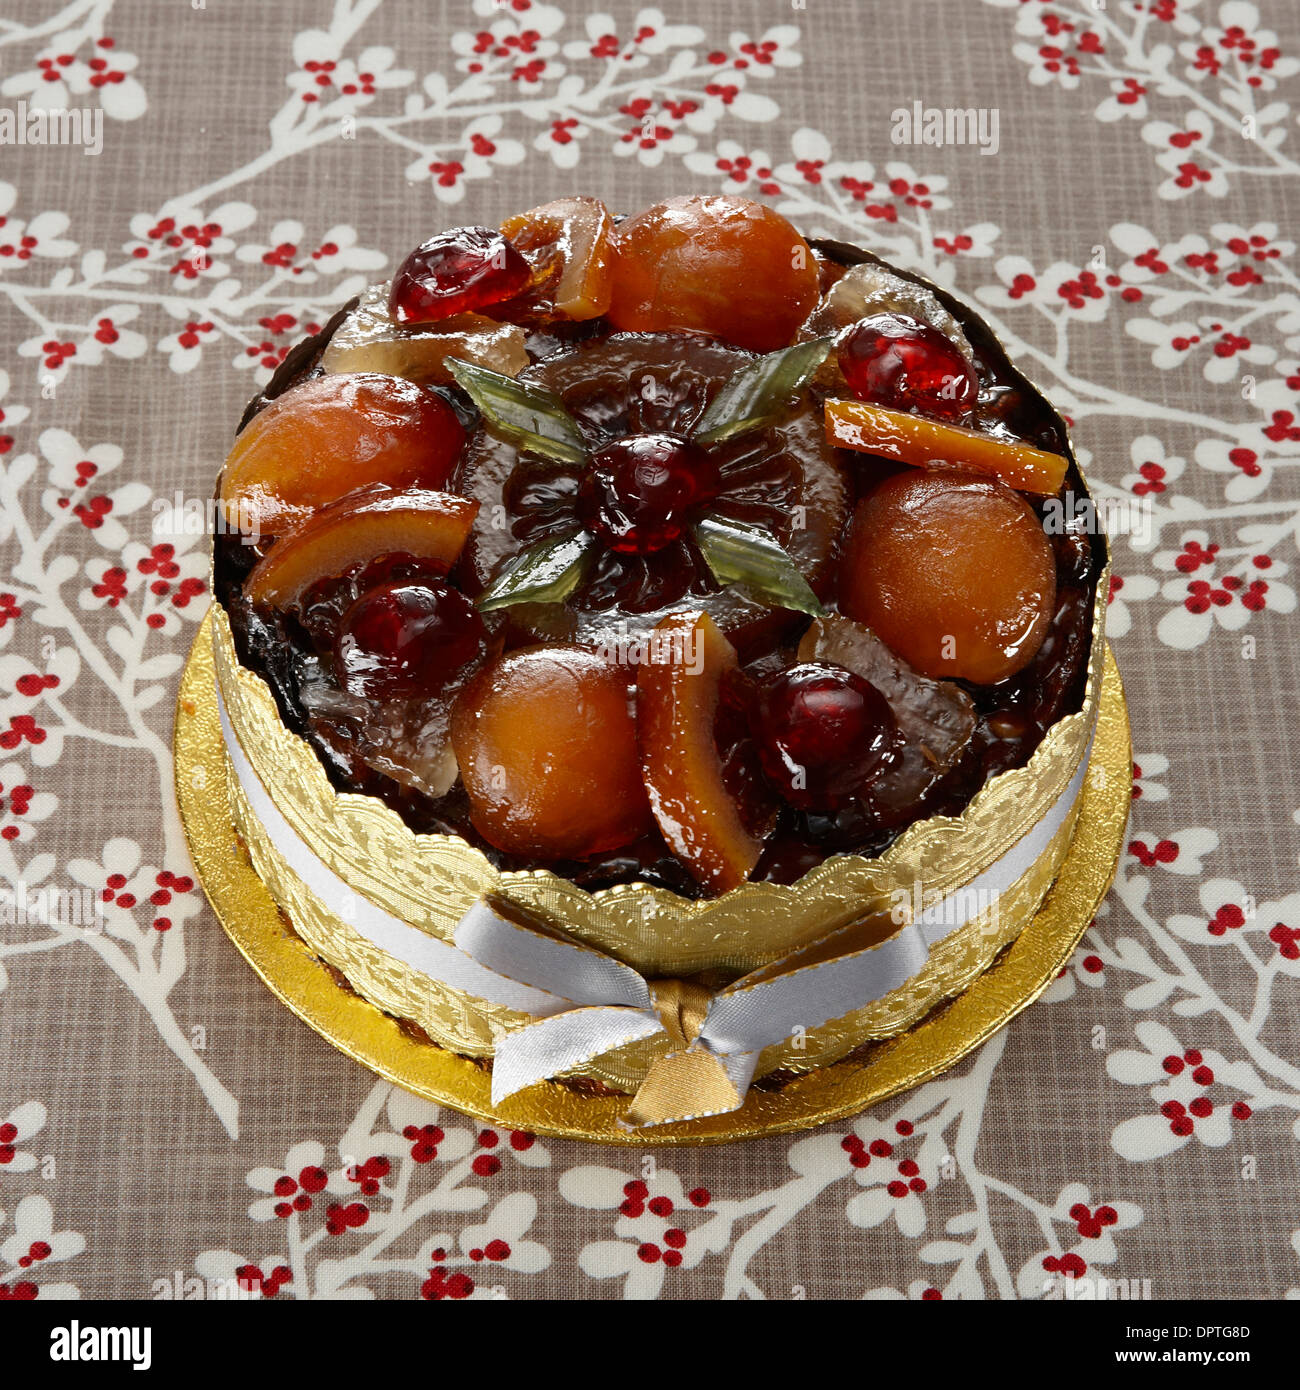 Glazed fruit Christmas cake Stock Photo